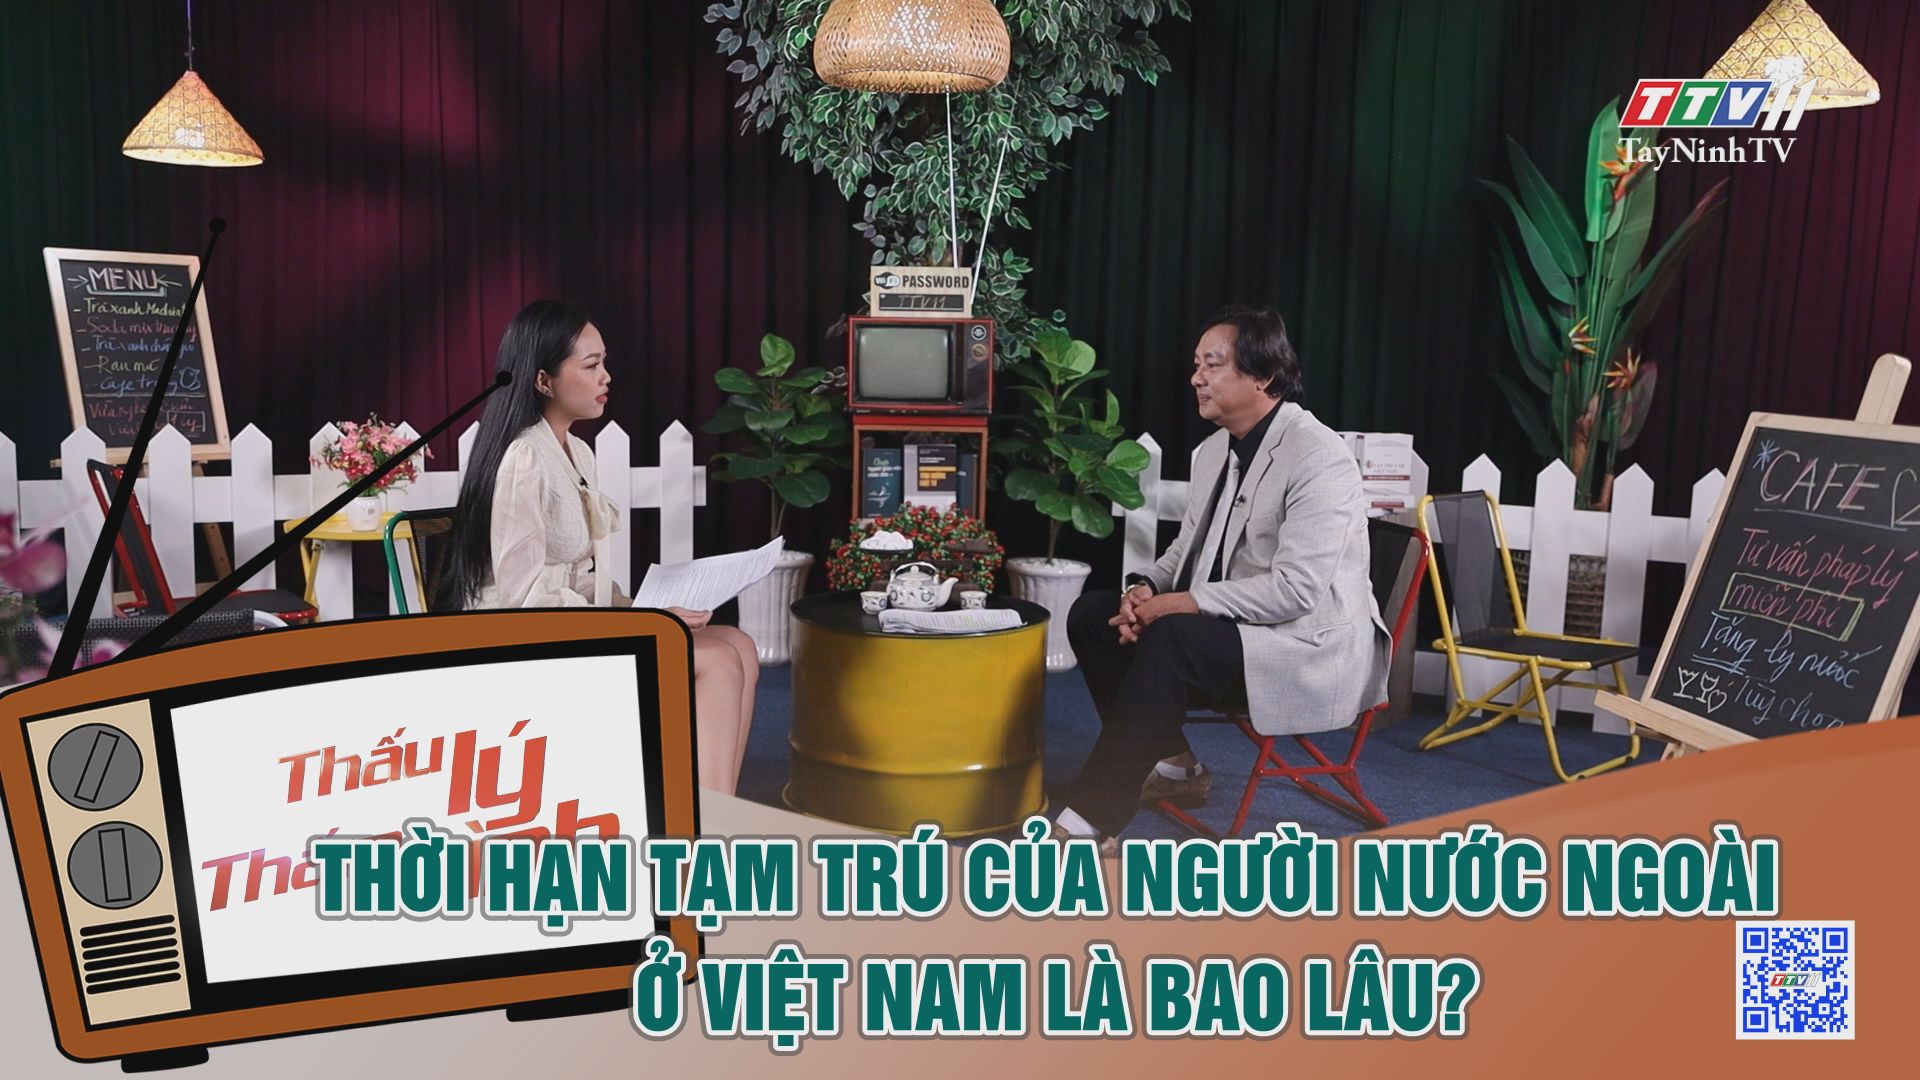 Thời hạn tạm trú của người nước ngoài ở Việt Nam là bao lâu? | THẤU LÝ THẤM TÌNH | TayNinhTVE